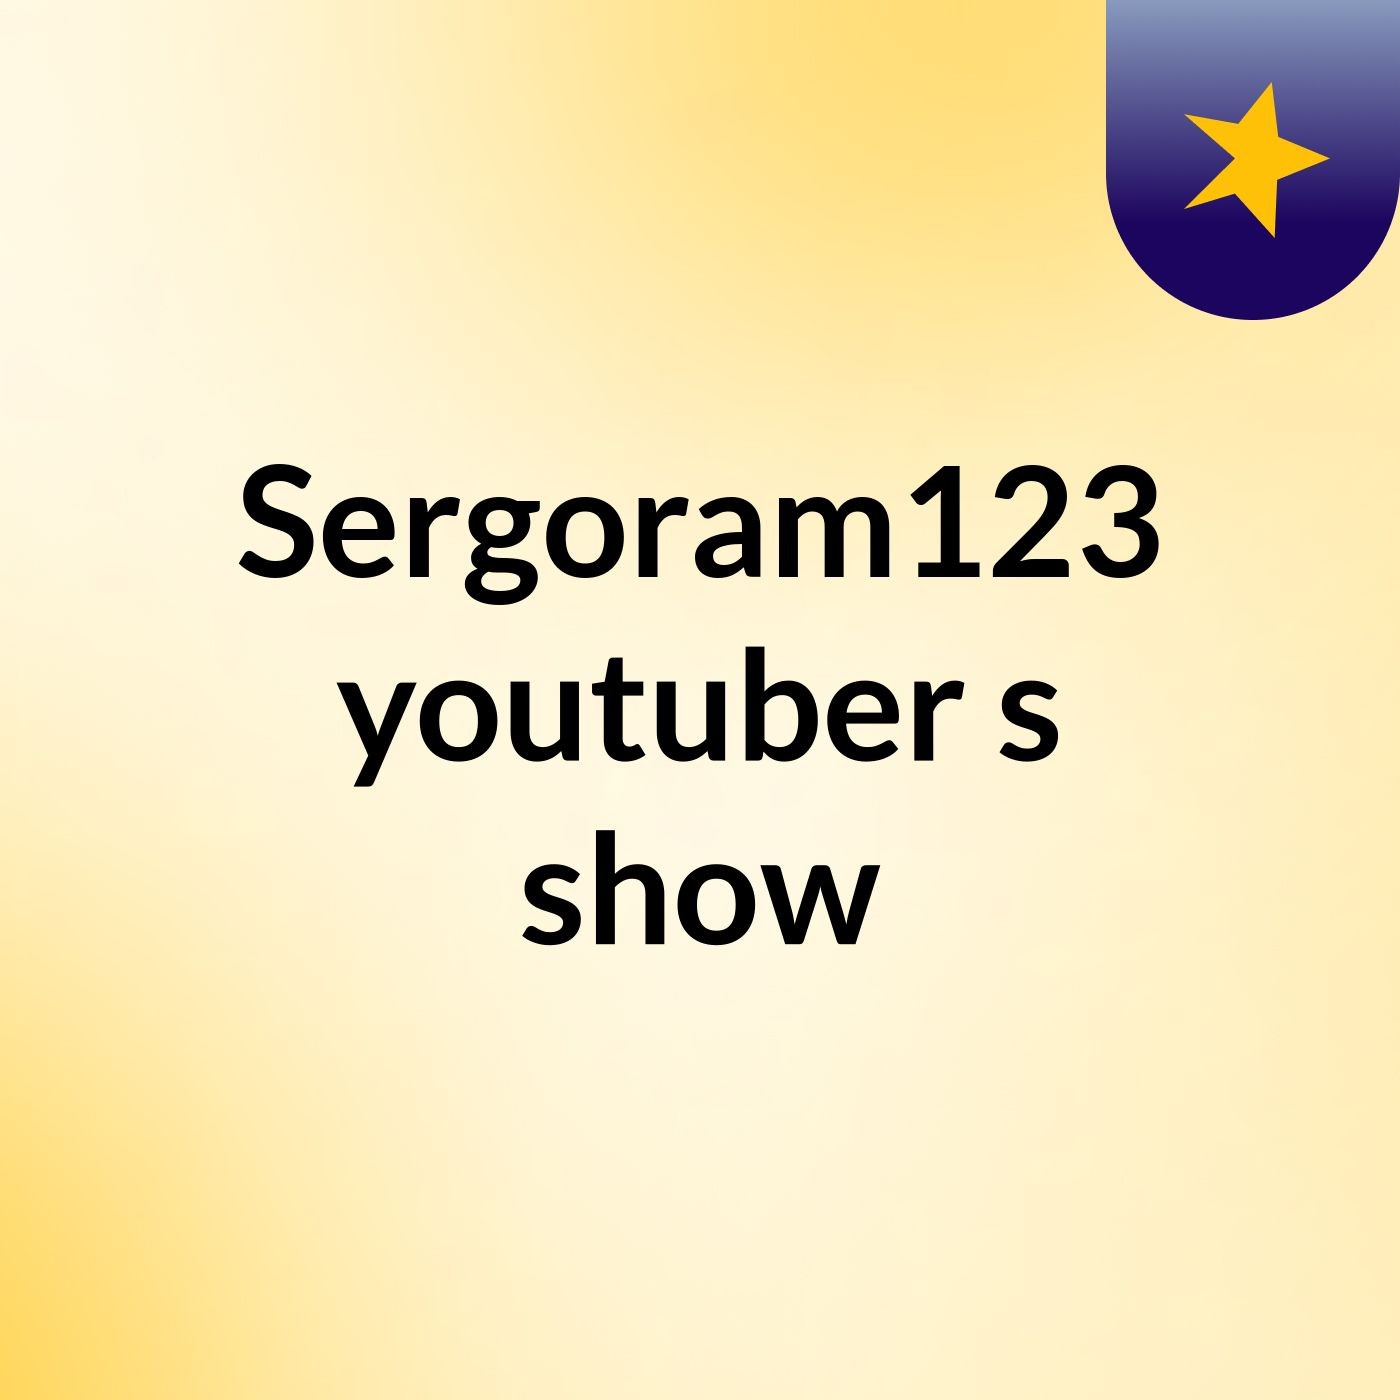 Sergoram123 youtuber's show